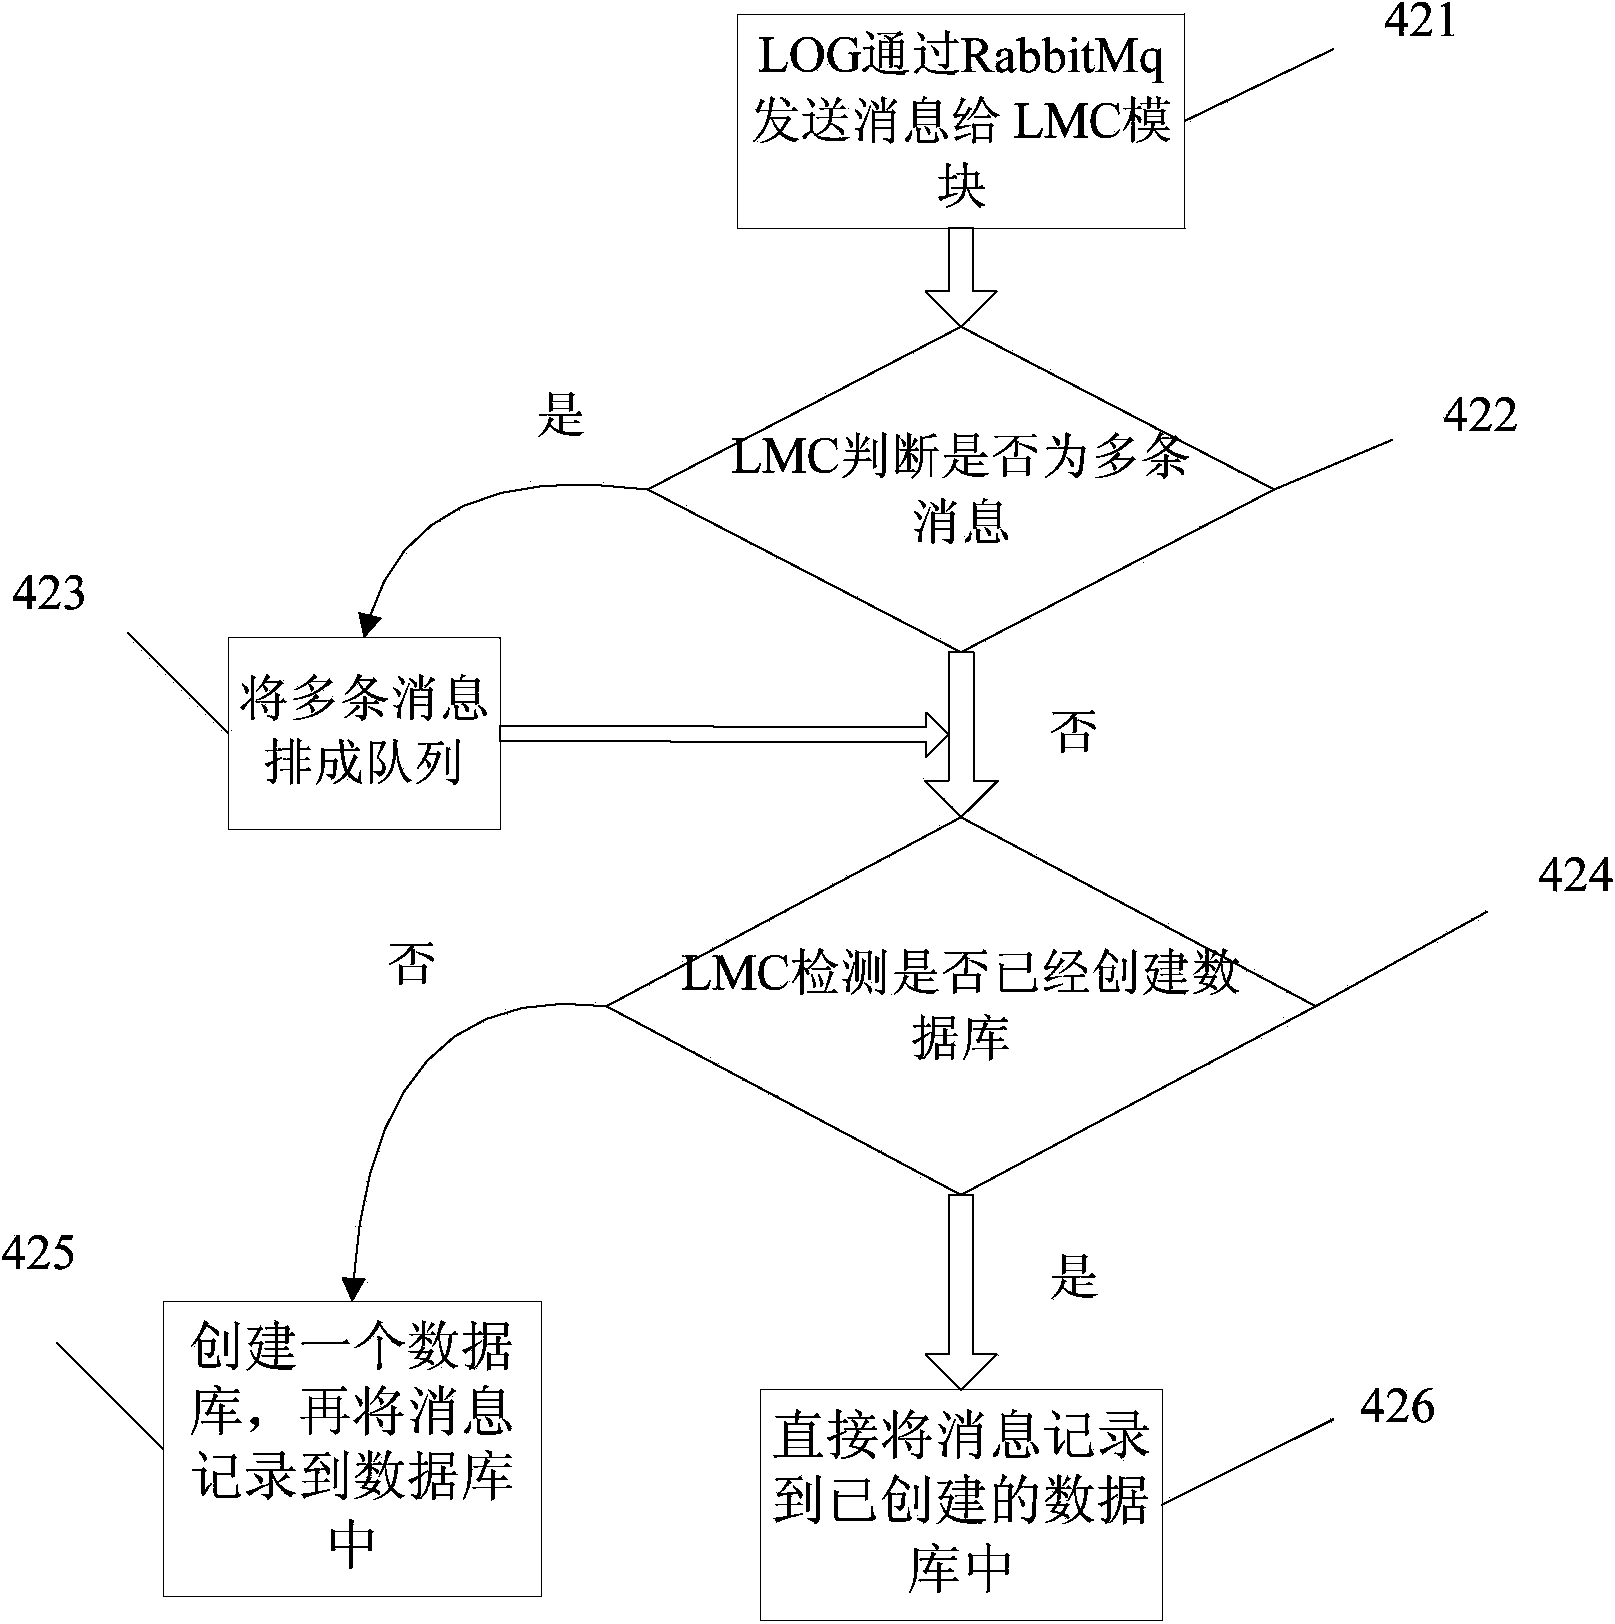 Log managing method for cluster